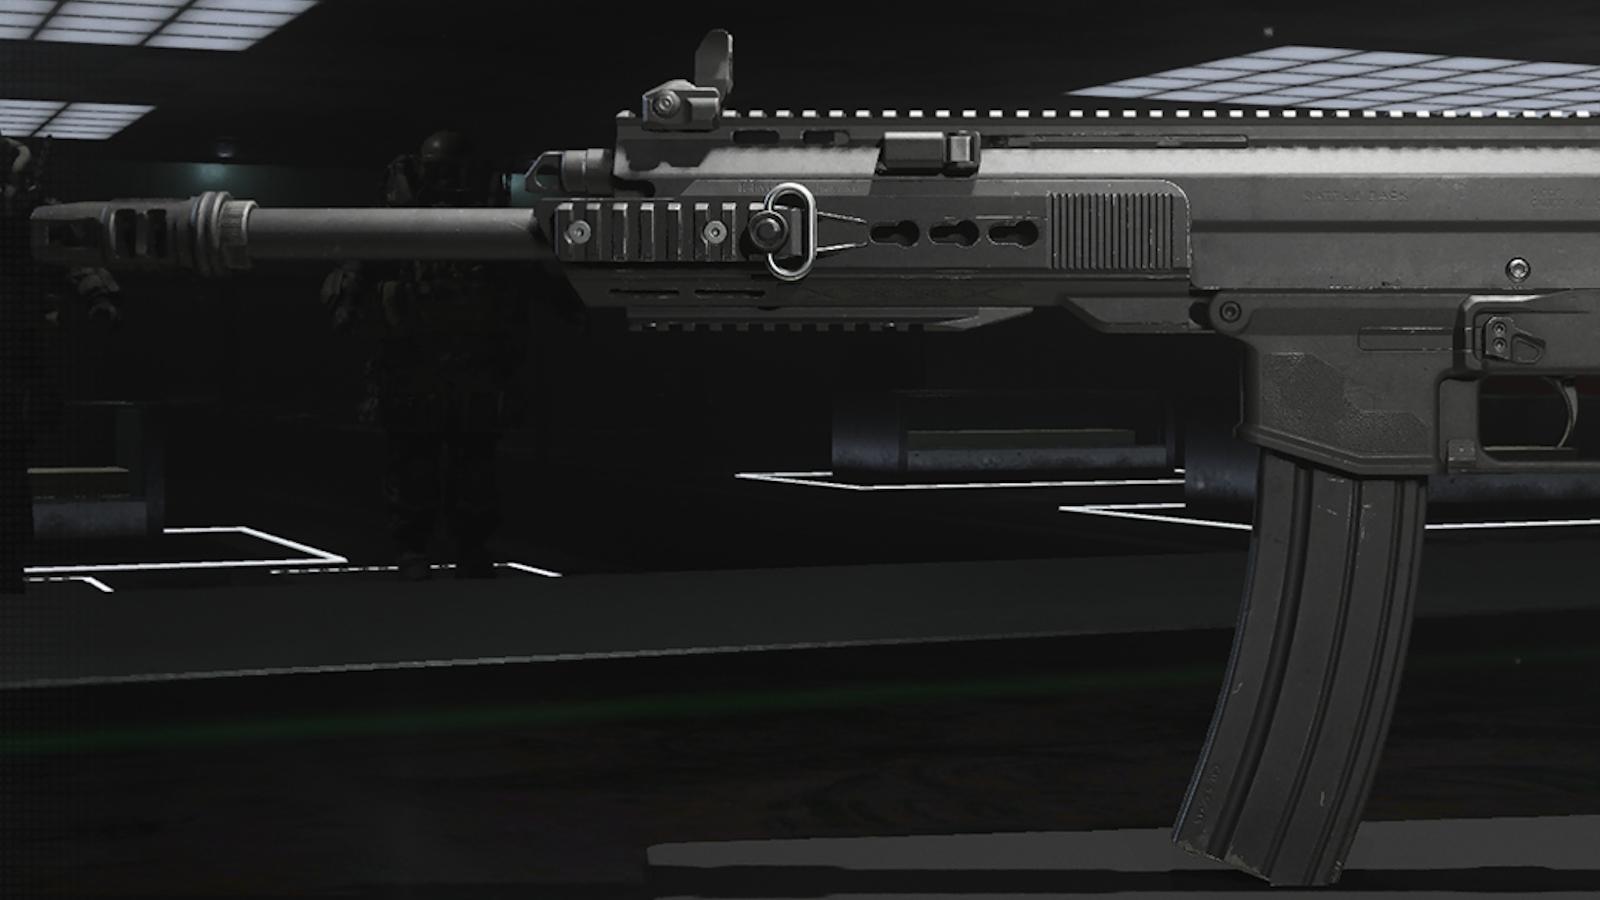 A side profile of the Sidewinder battle rifle in Modern Warfare 3.